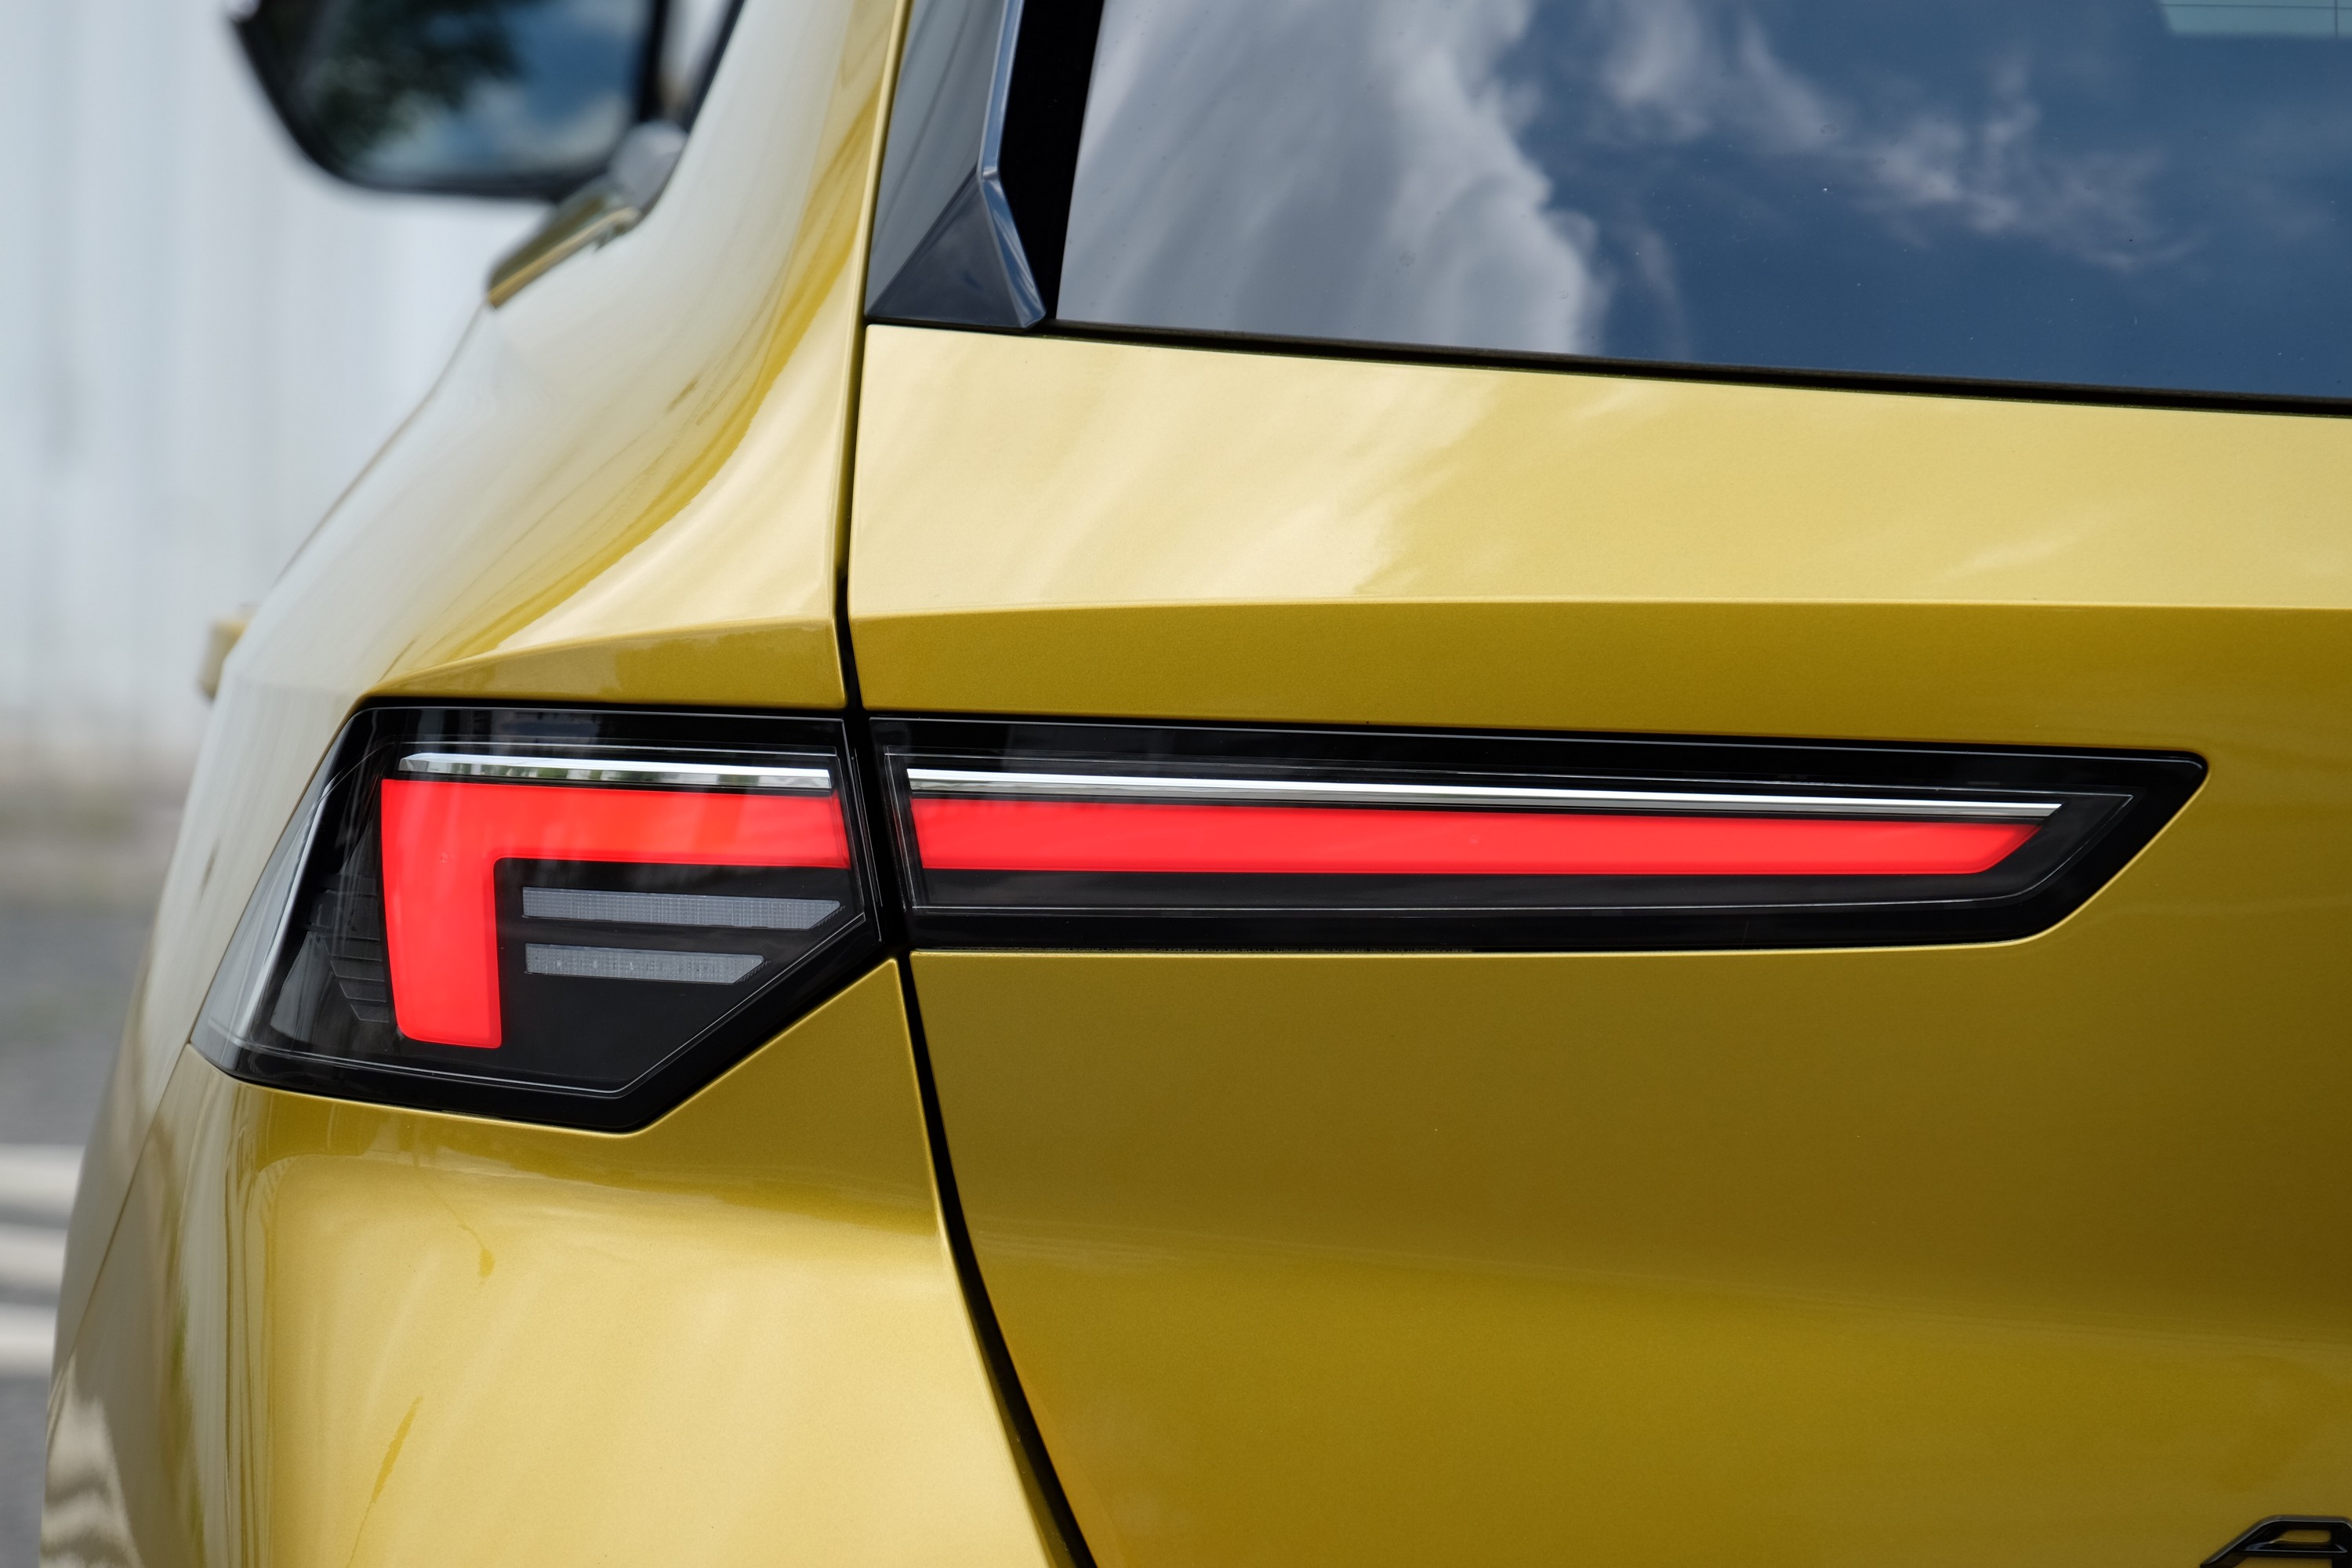 31 évesen a legjobb formában? – Teszten az új Opel Astra 16